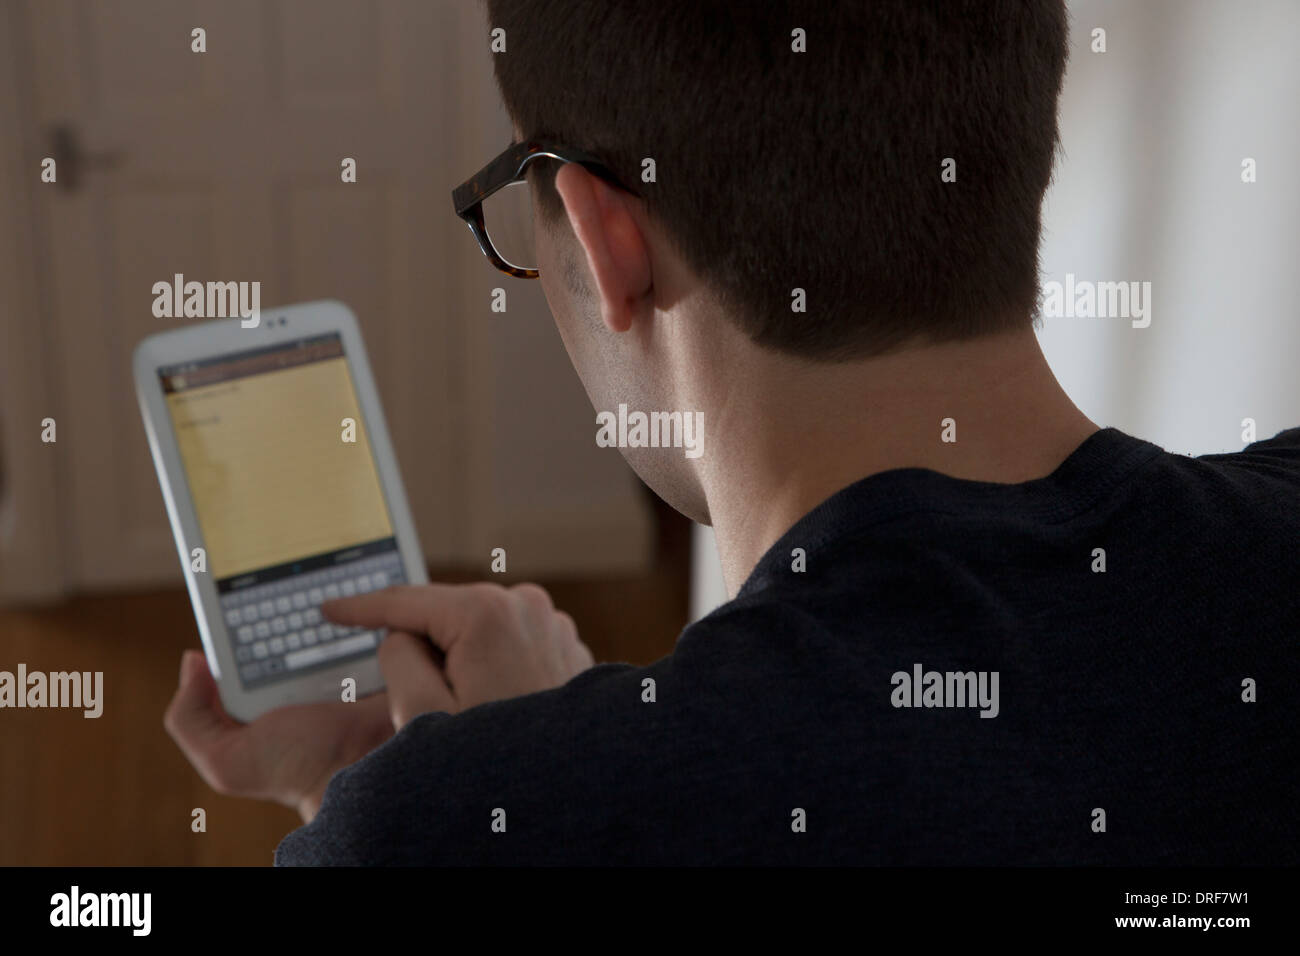 Über Schulter Schuss von Mann mit Brille, die Eingabe über eine Tastatur auf dem Touch-Bildschirm digitale Tablett. Stockfoto